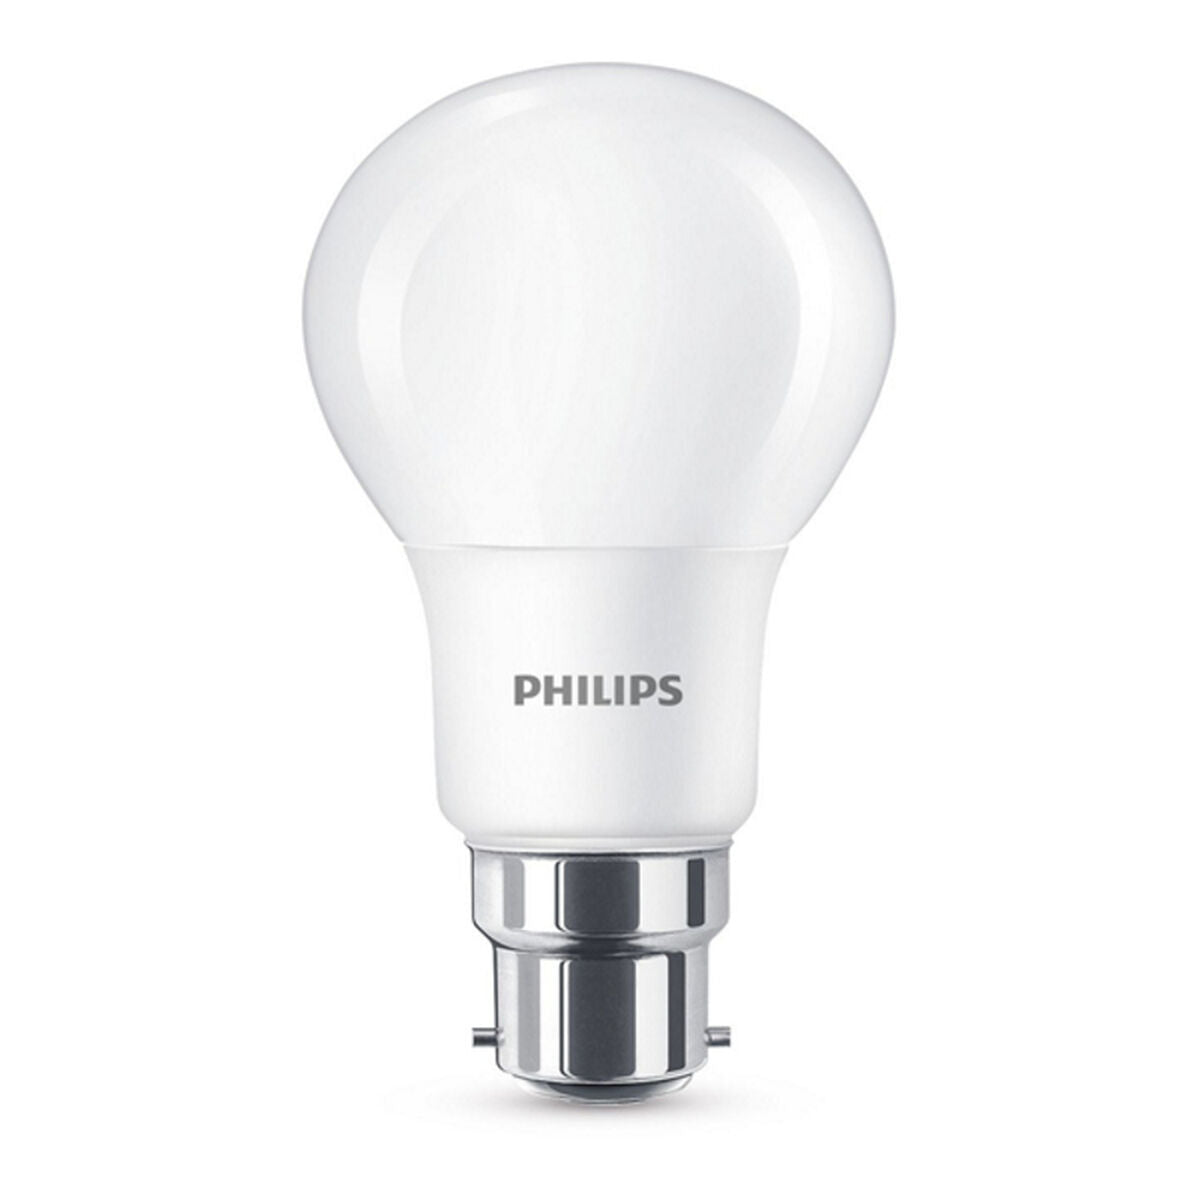 Sferische Ledlamp Philips 8W A+ 4000K 806 lm Warm licht B22 8W 60W 806 lm (2700k) (4000K)